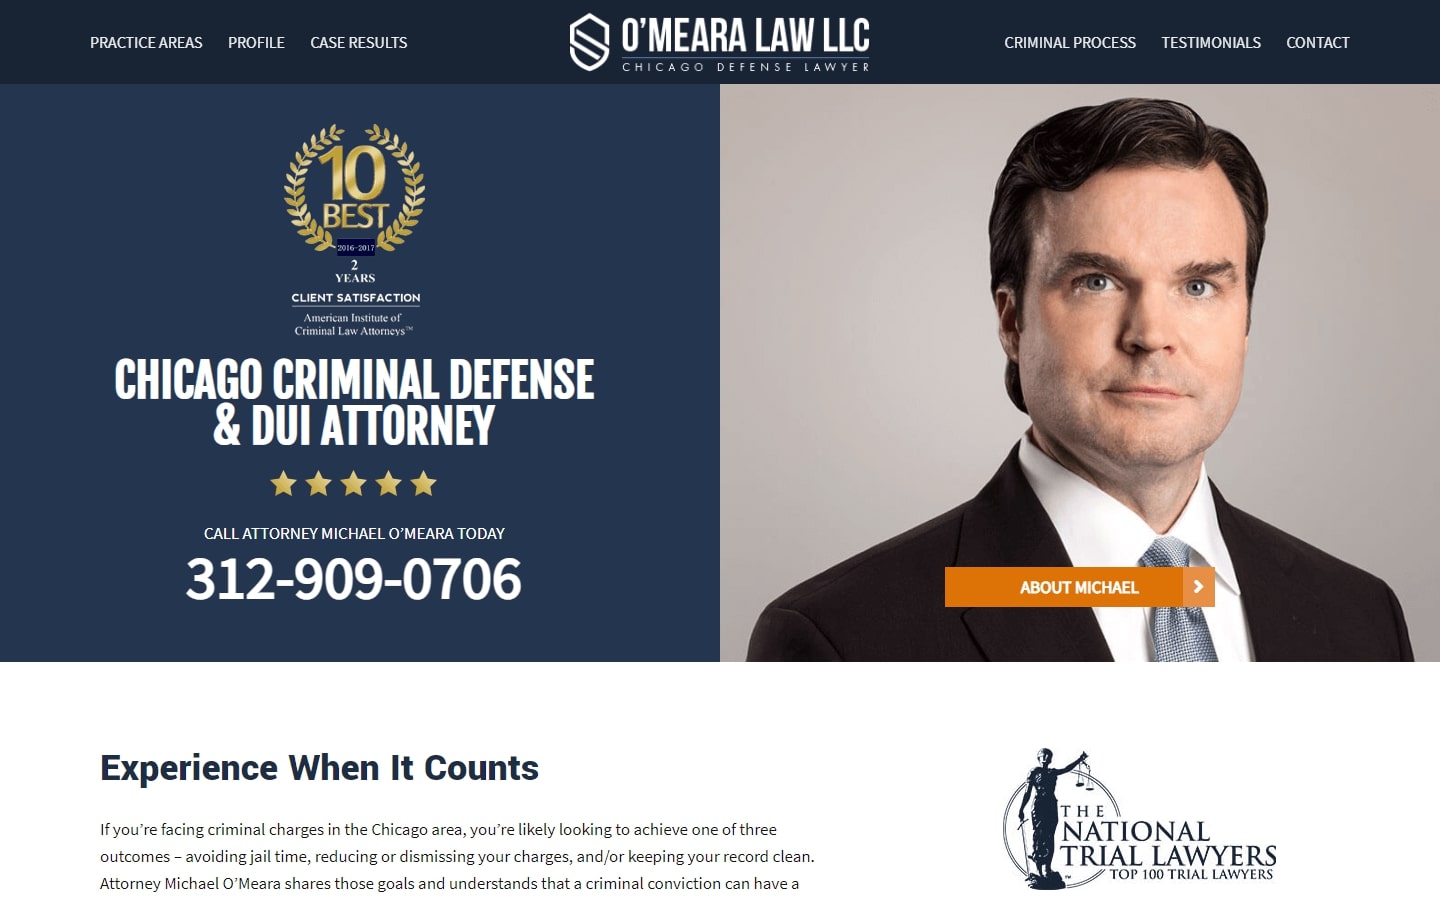 criminal defense law firm website design